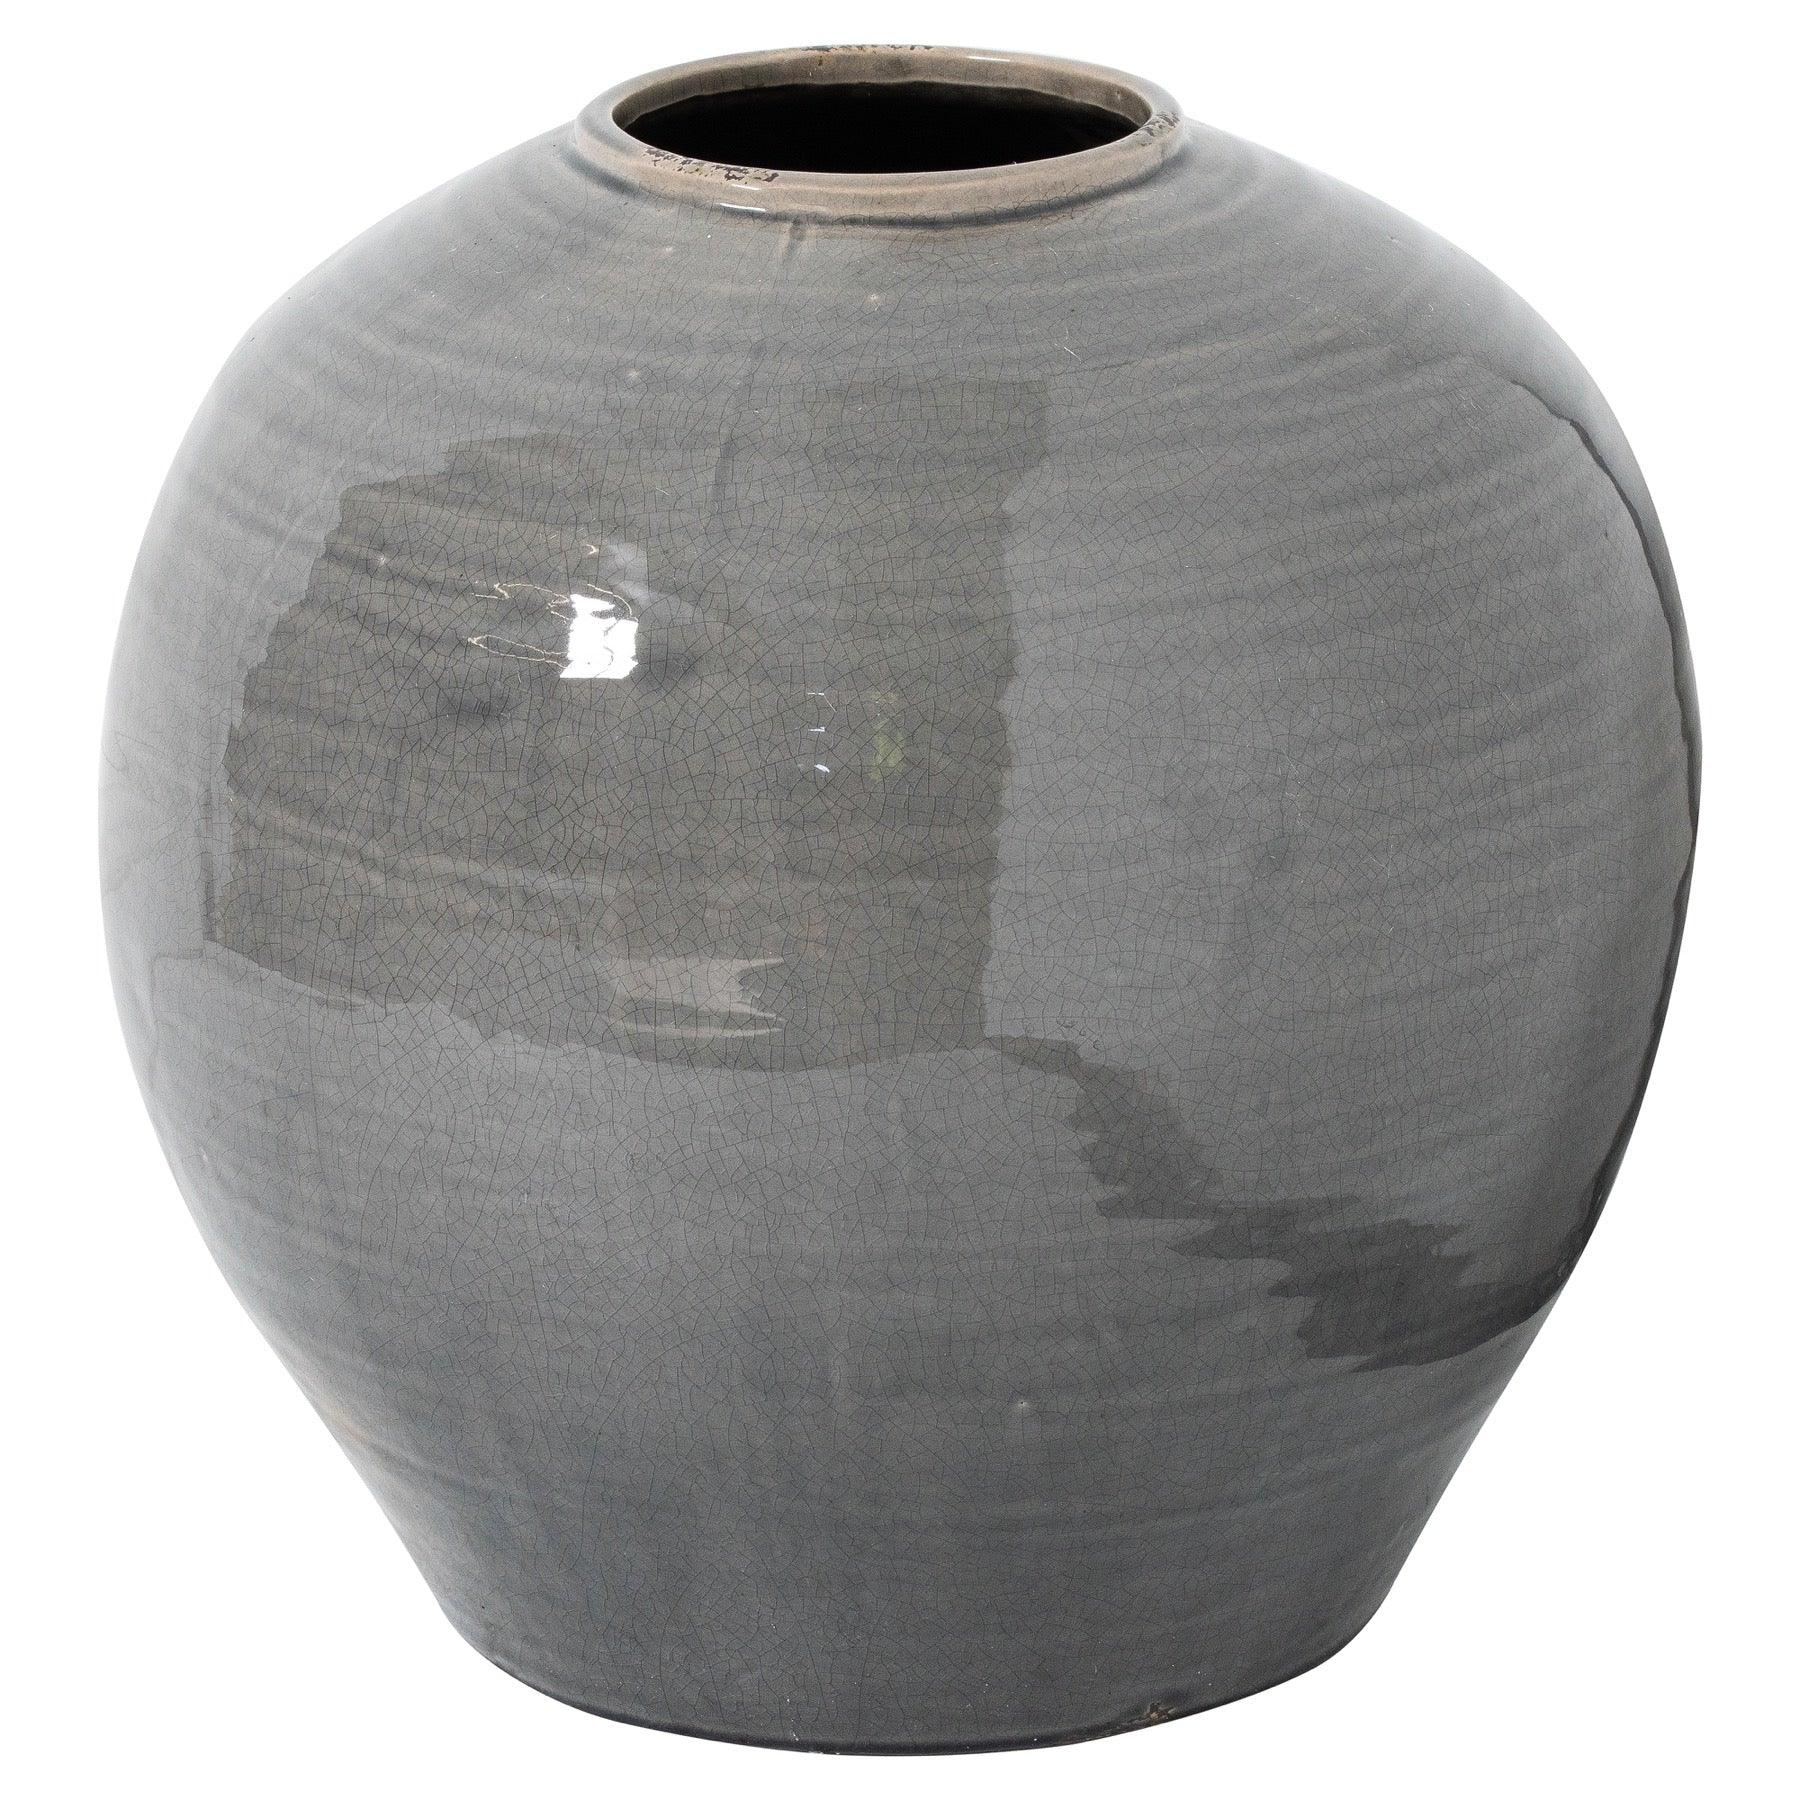 View Garda Grey Glazed Regola Vase information